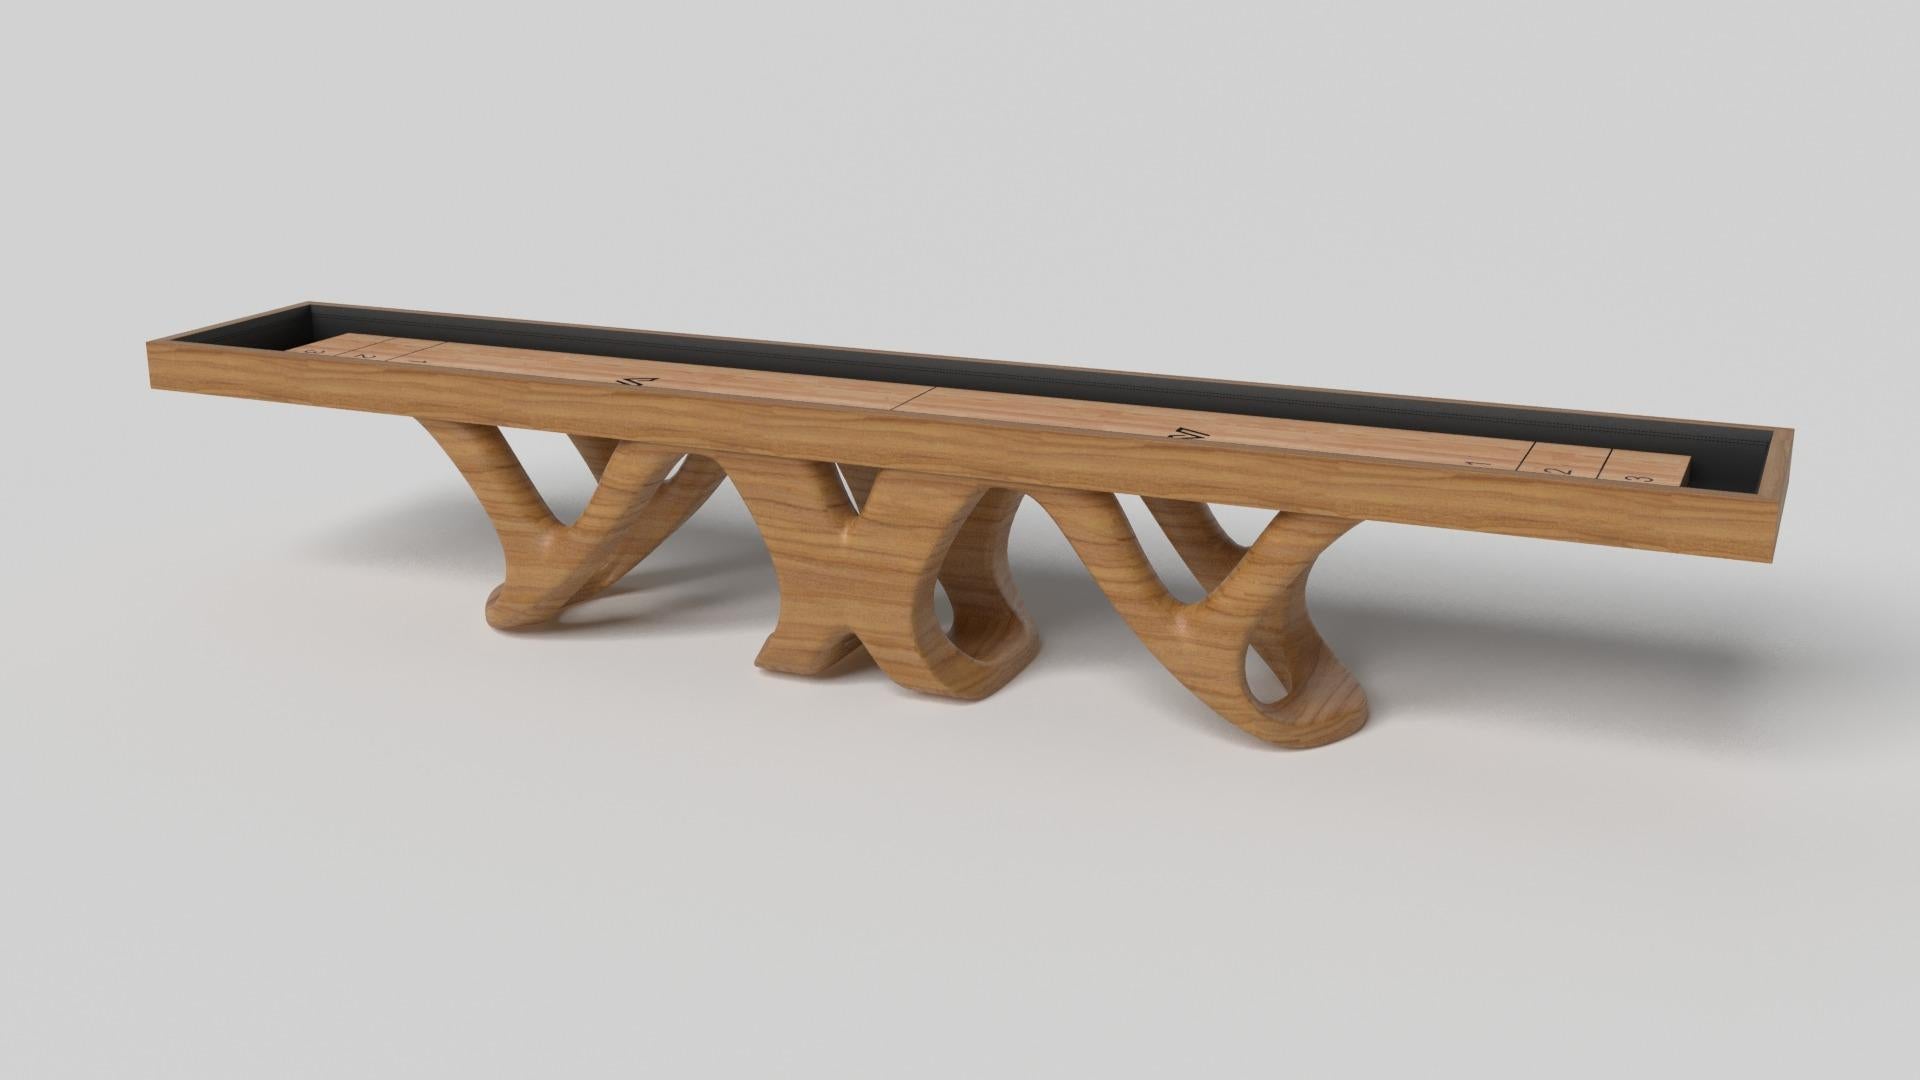 Inspiriert vom Werk Antoni Gaudis und der katalanischen Moderne, besticht der Draco Shuffleboard-Tisch in Nussbaum durch seinen kühnen Stil mit glatten, geschwungenen Beinen und einer reichhaltigen, glatten Oberfläche aus professionellem Ahornholz